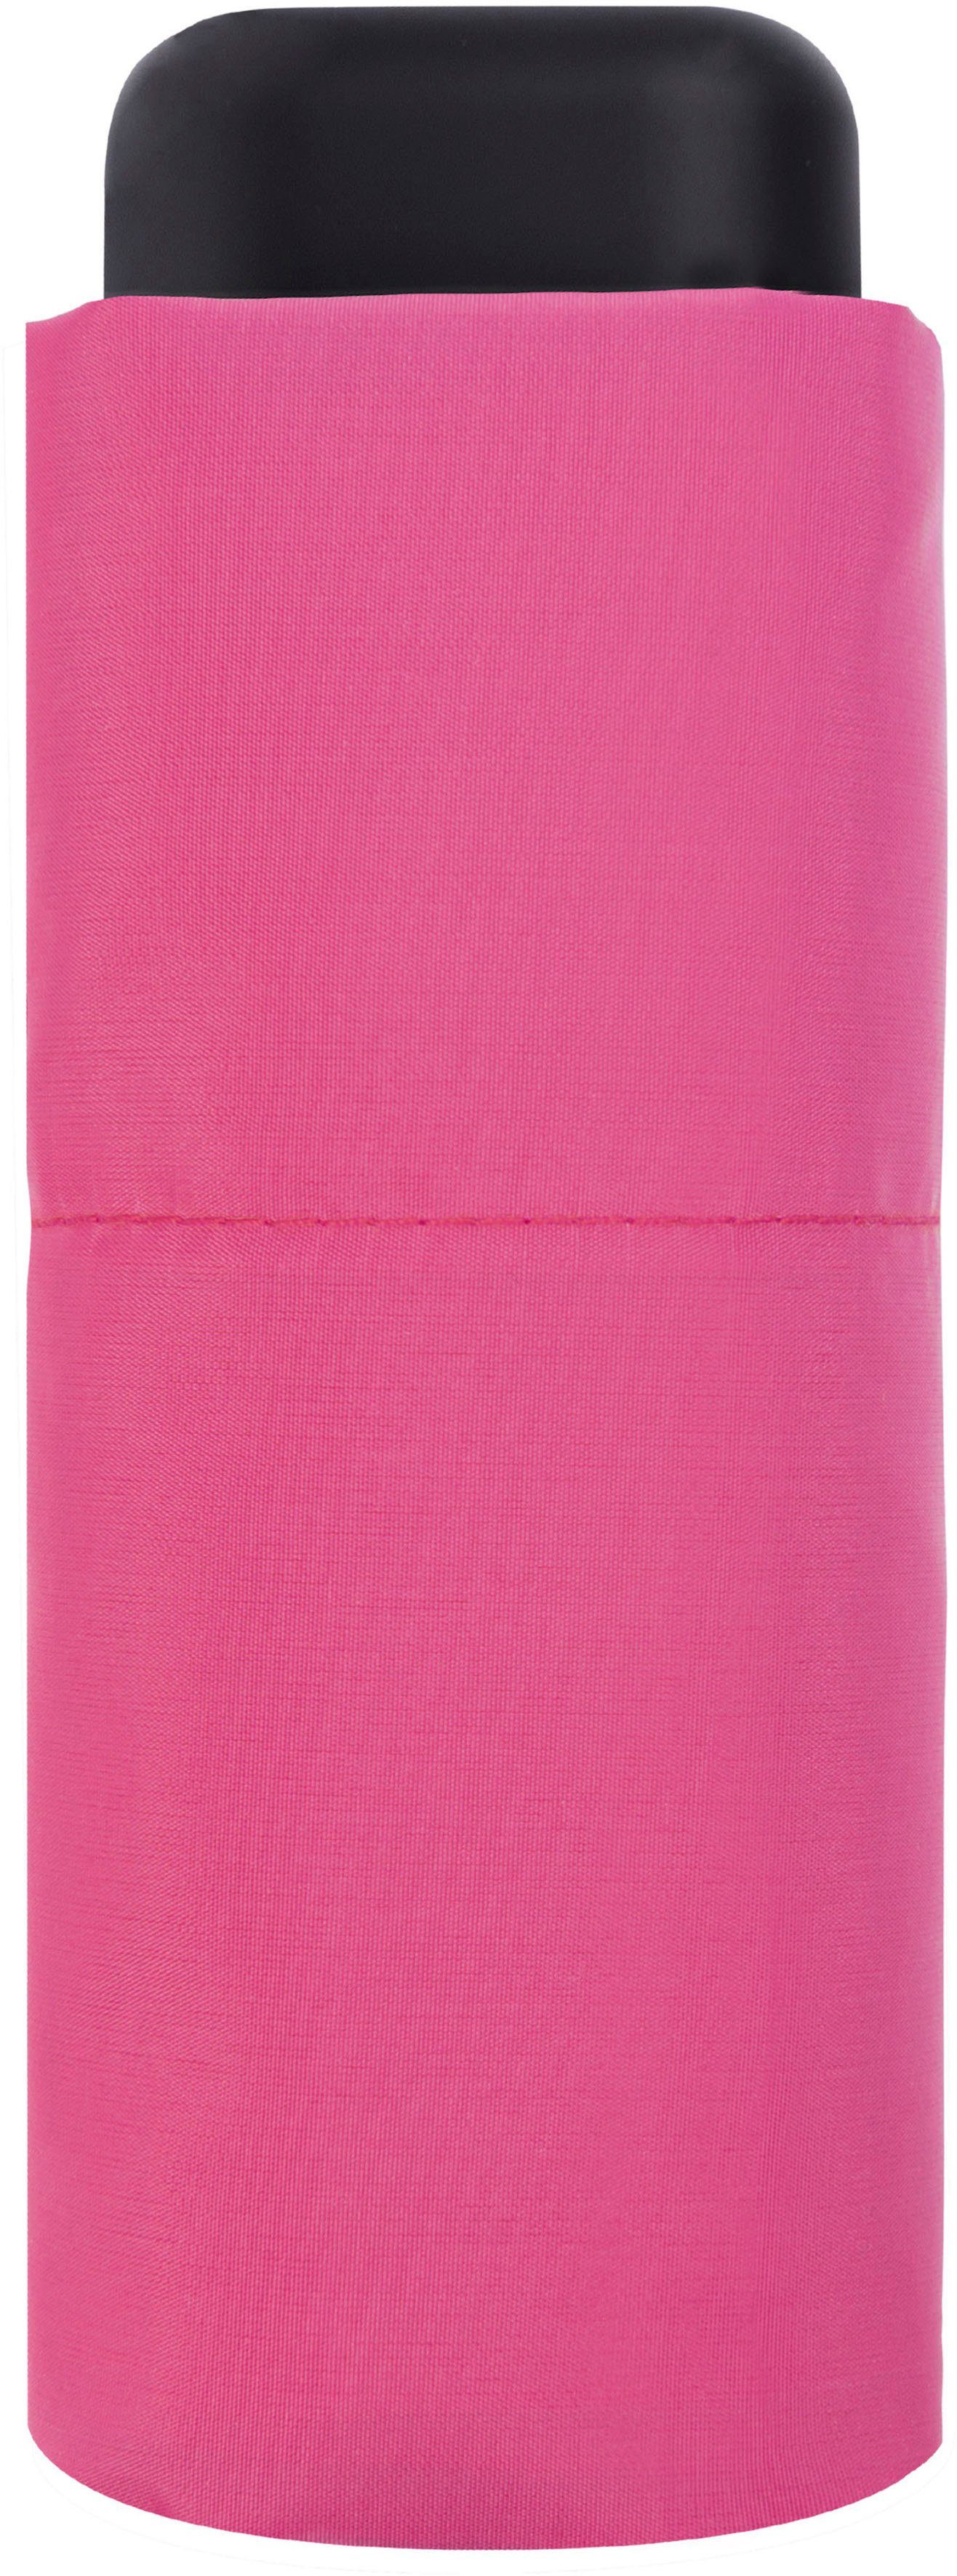 pink Taschenregenschirm derby Slim, Micro